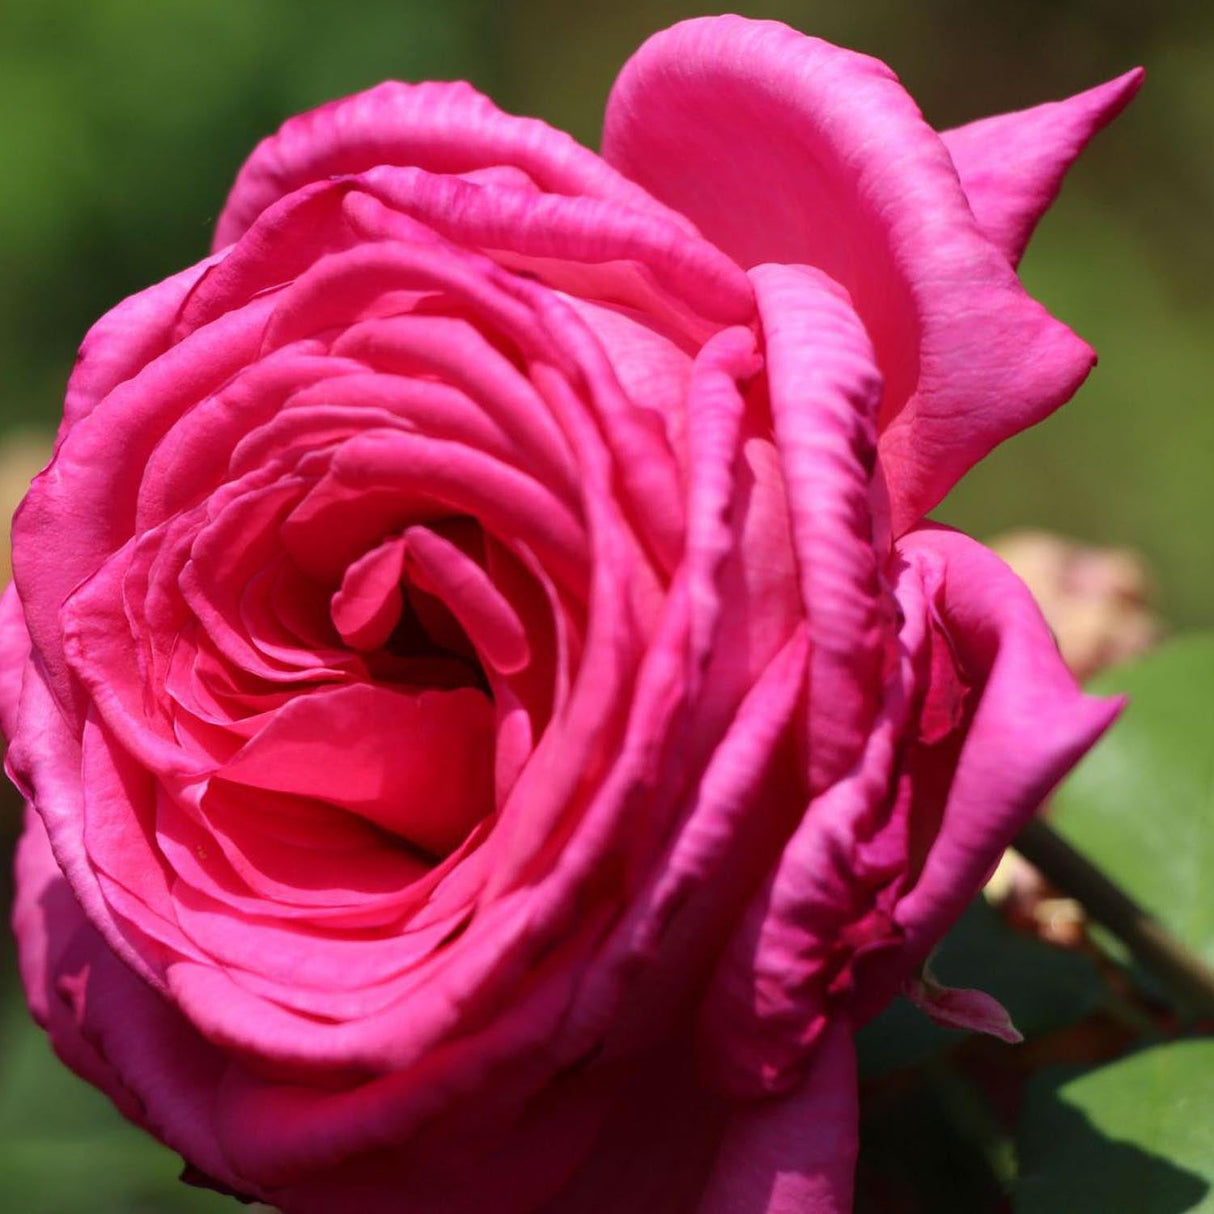 Trandafir Teahibrid Duftrausch - VERDENA-livrat in ghiveci plant-o-fix de 2L